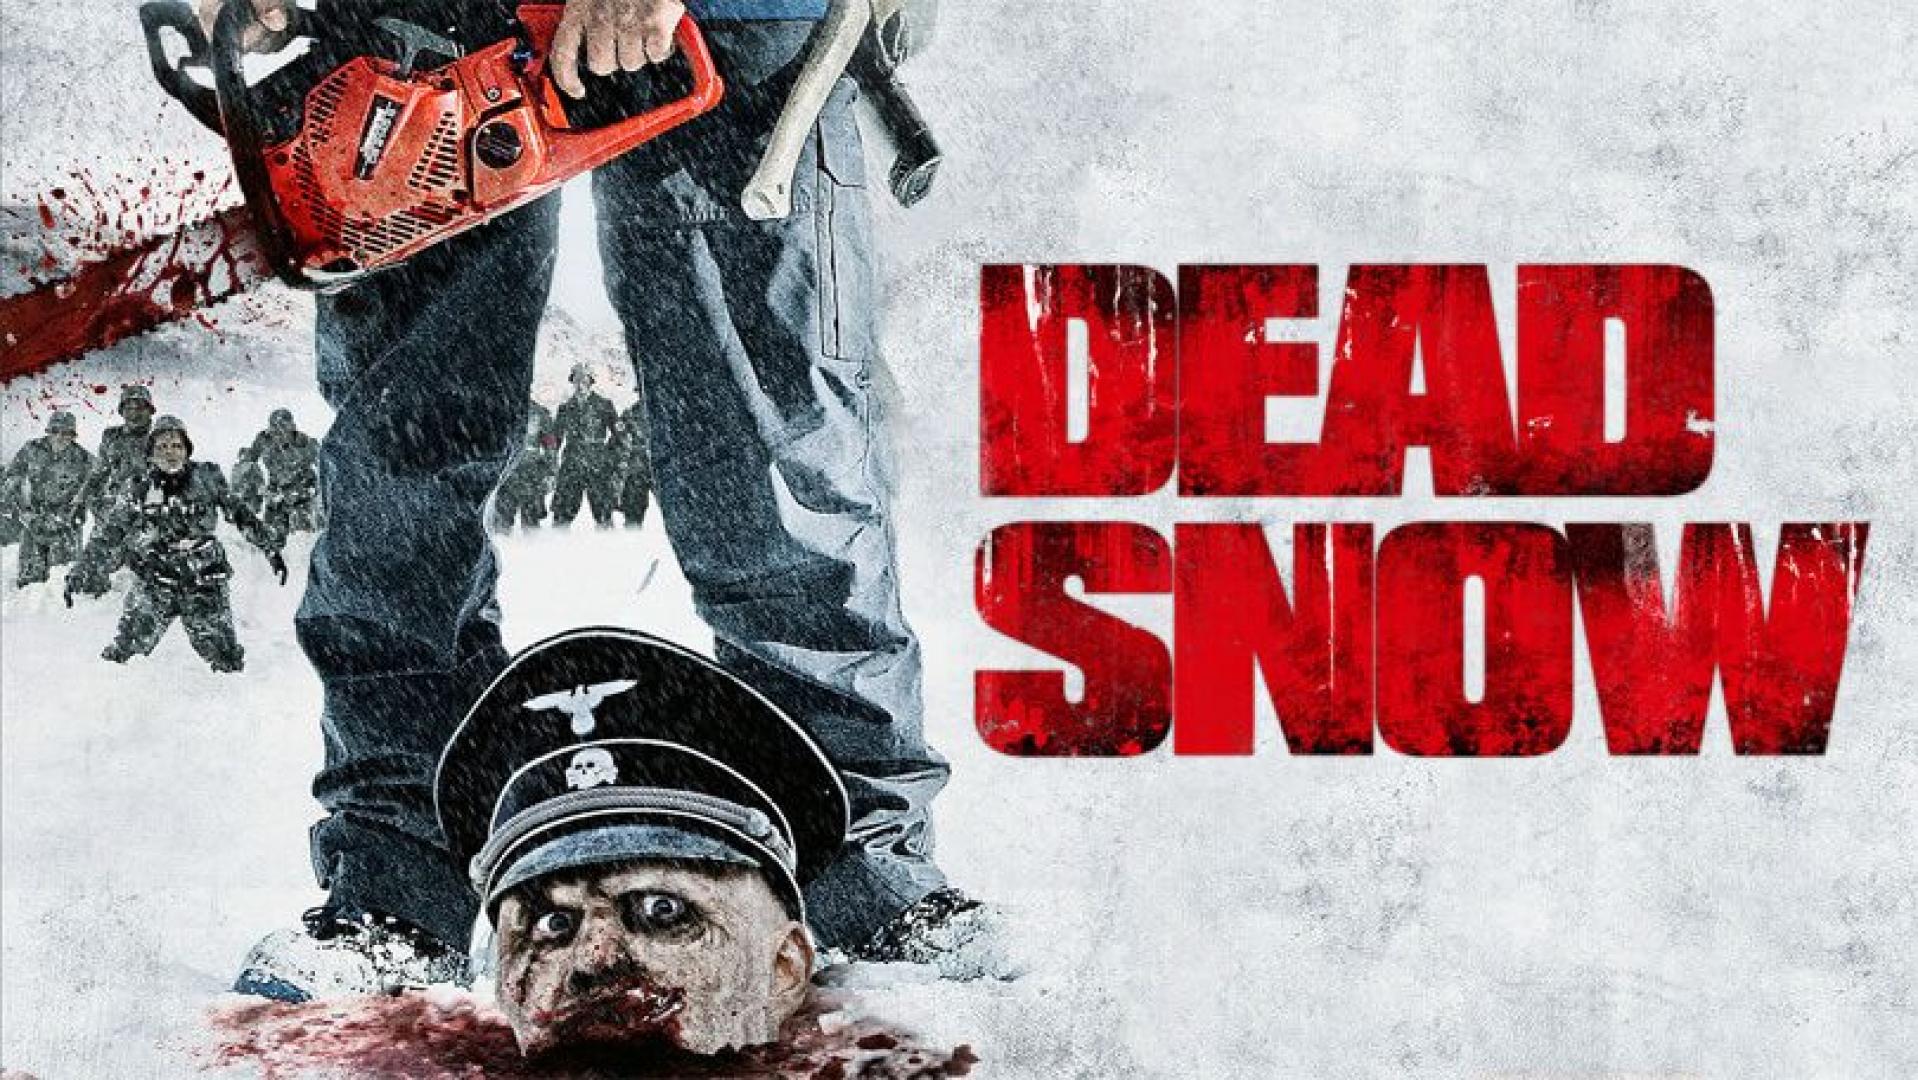 Død snø - Náci zombik (2009)